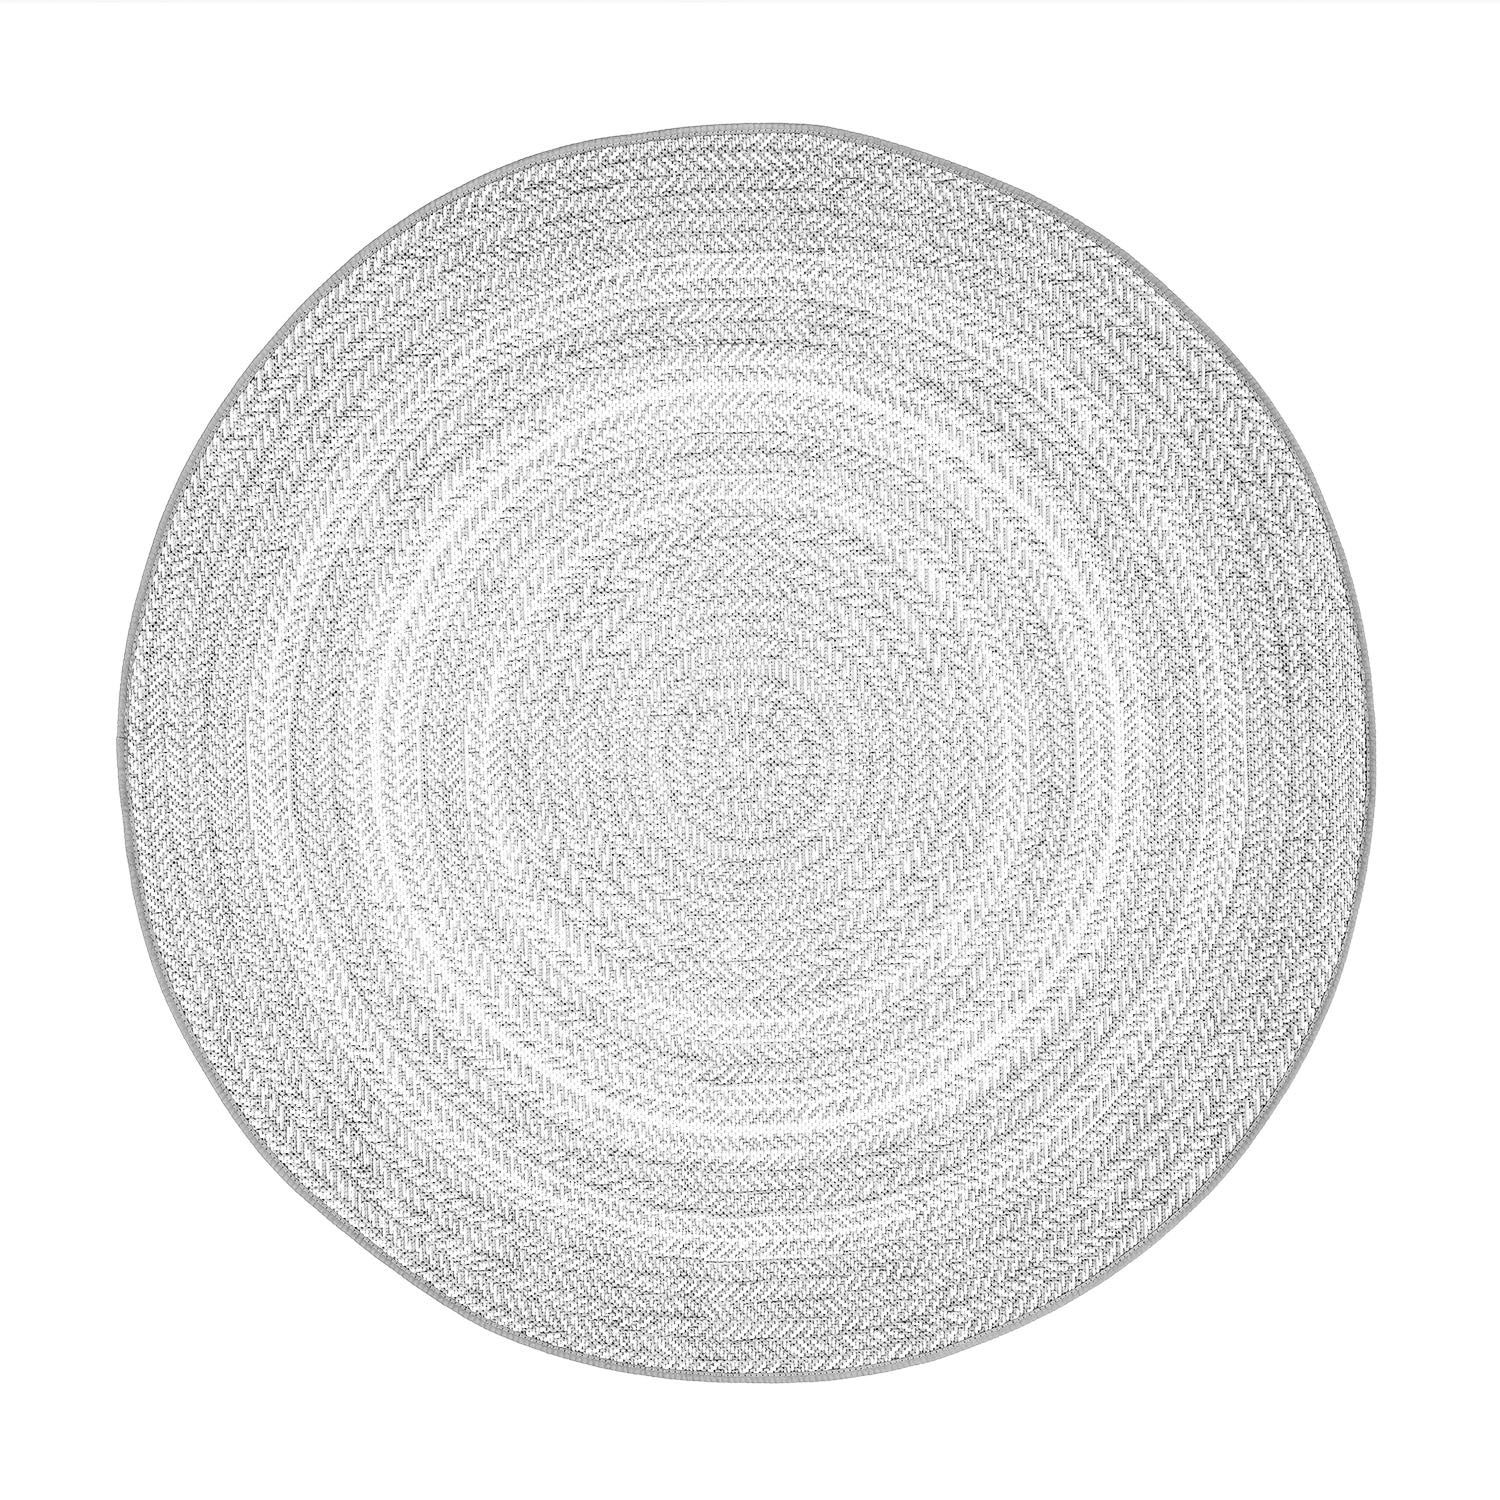 Tapete gris redondo texturizado de estilo rústico y artesanal (Essenza 48837-637)